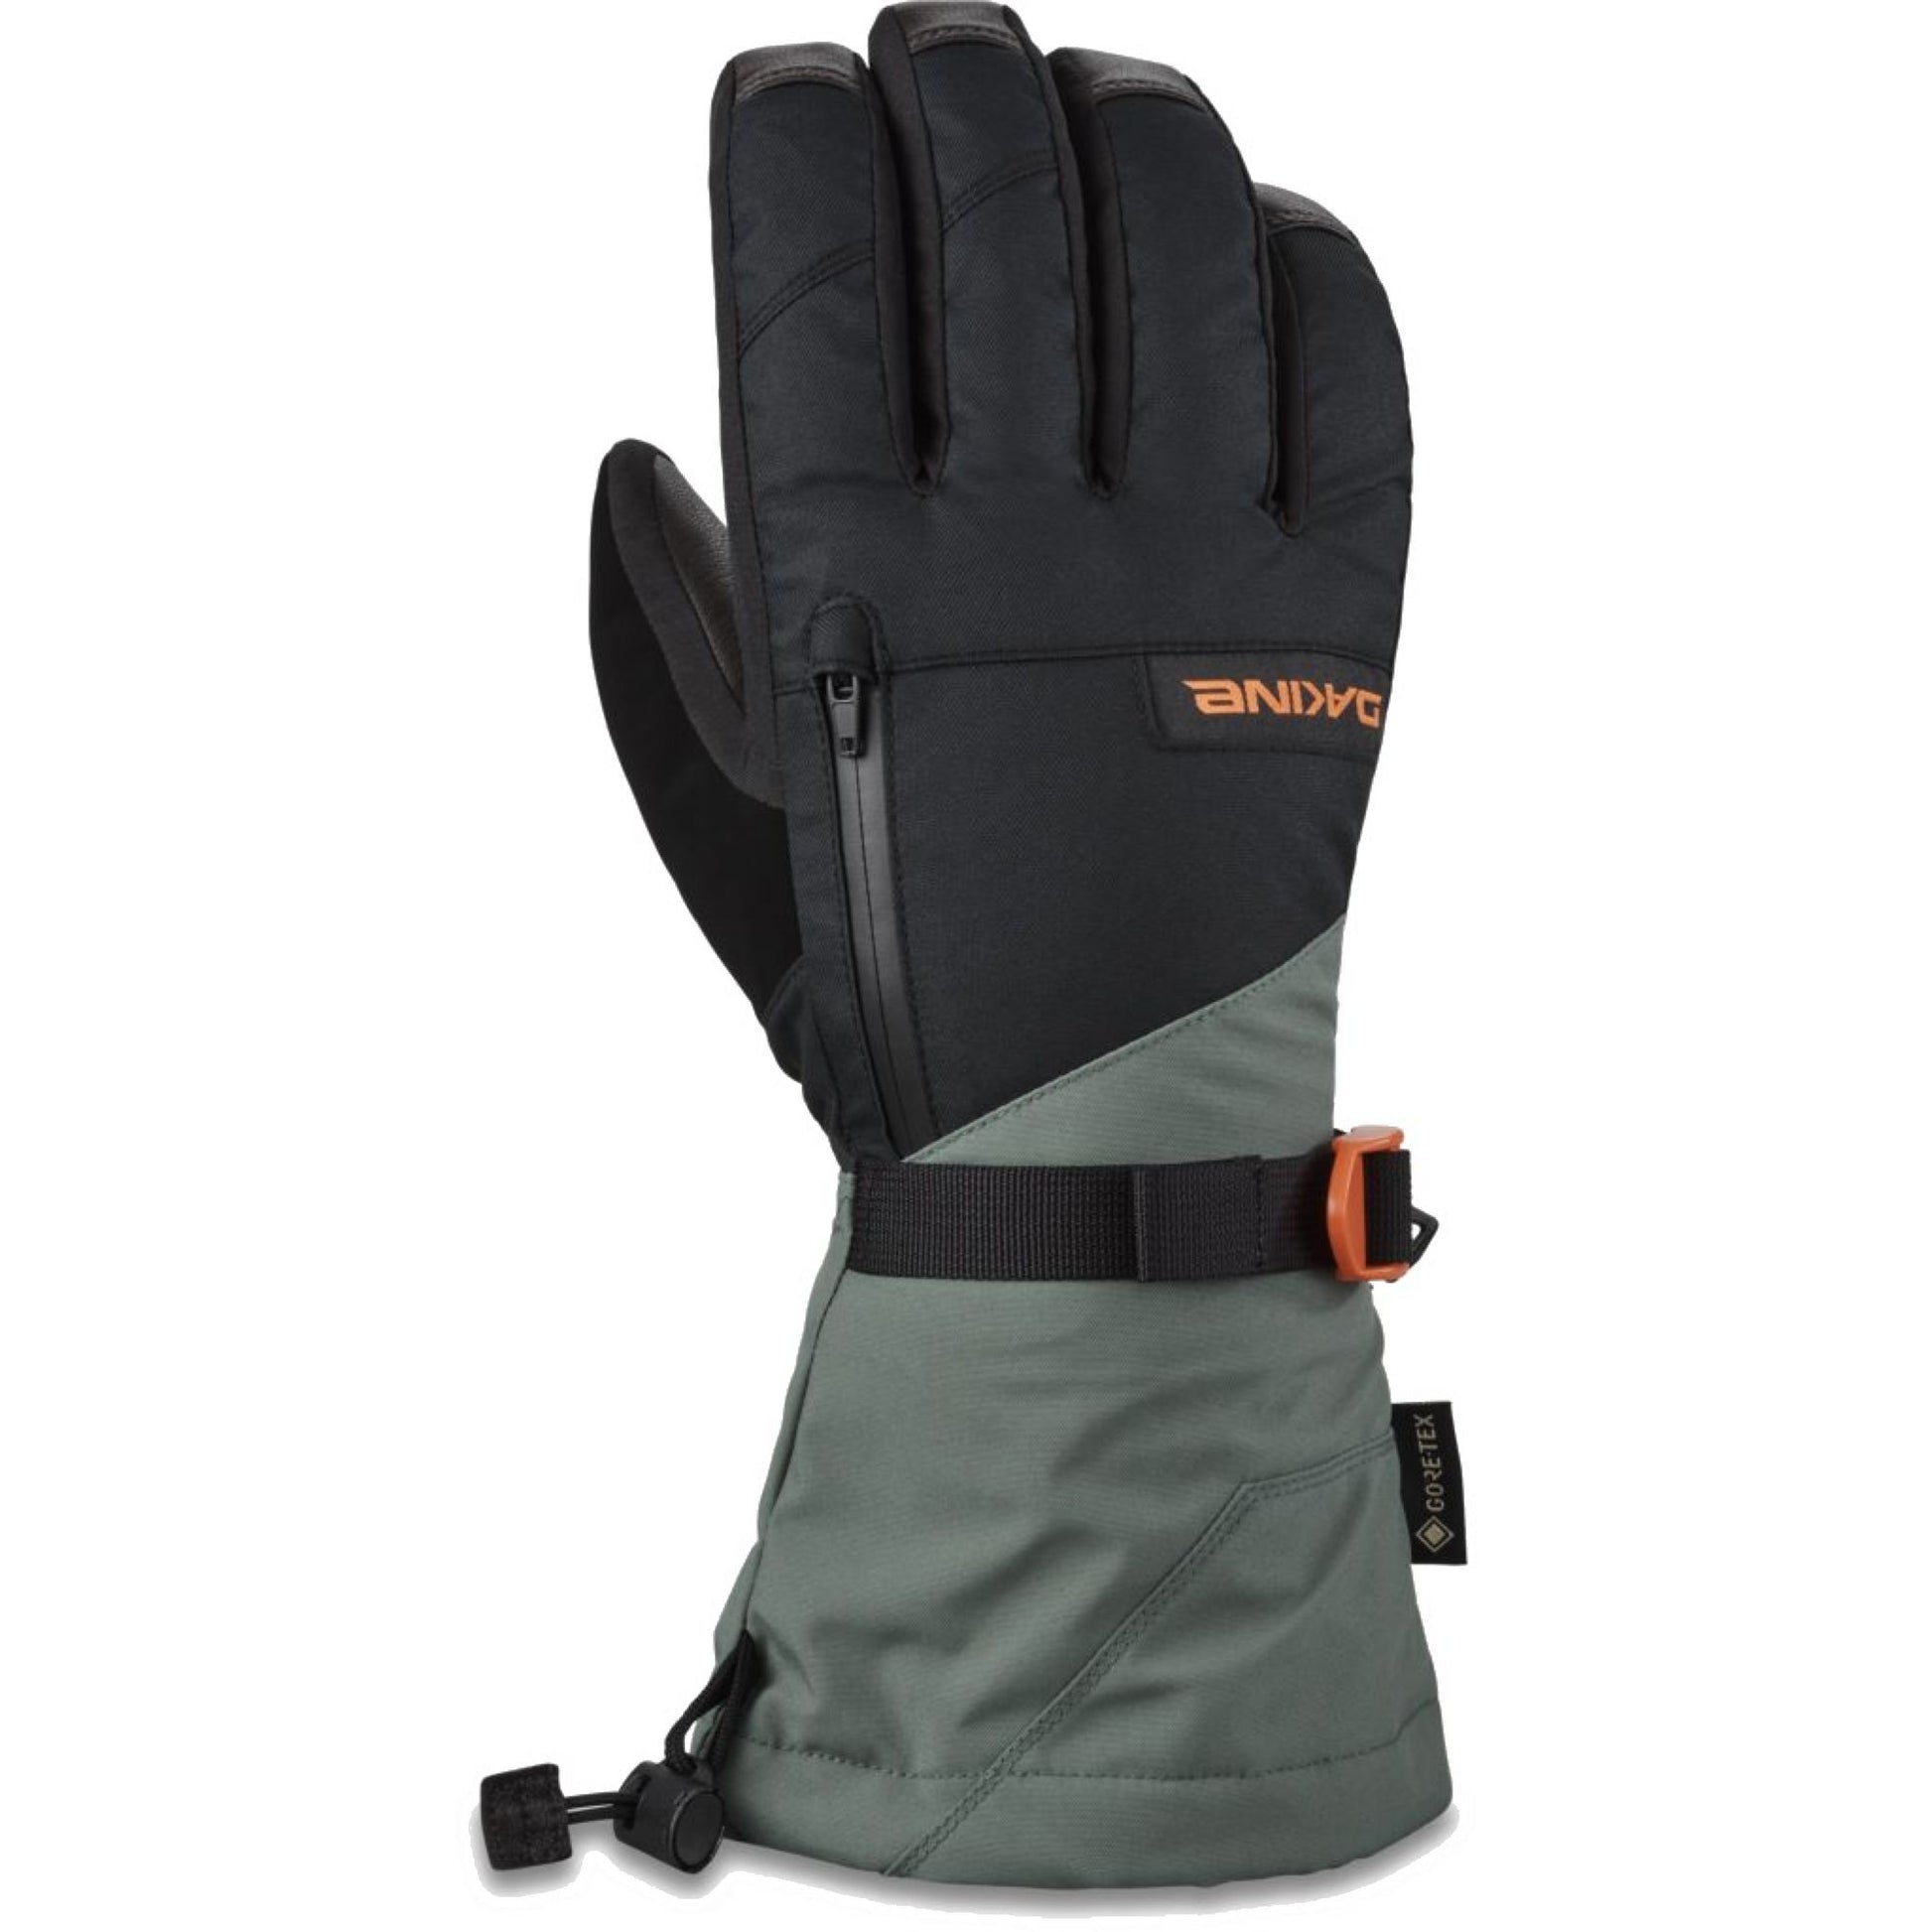 Dakine Leather Titan GORE-TEX Glove Dark Forest - Dakine Snow Gloves